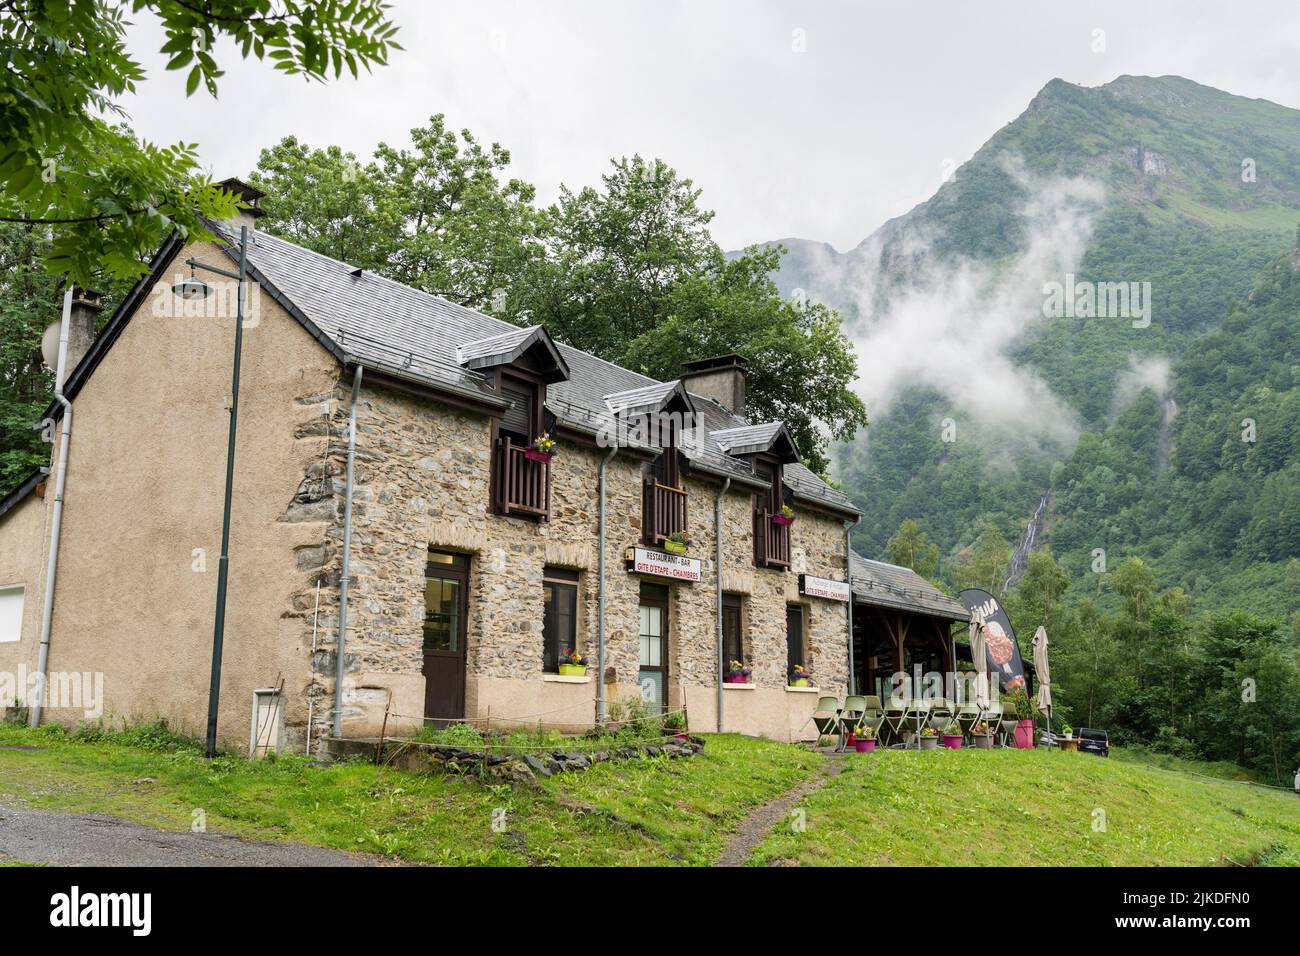 Astau farms, Astau valley, Luchon,, Pyrenean mountain range, France. Stock Photo